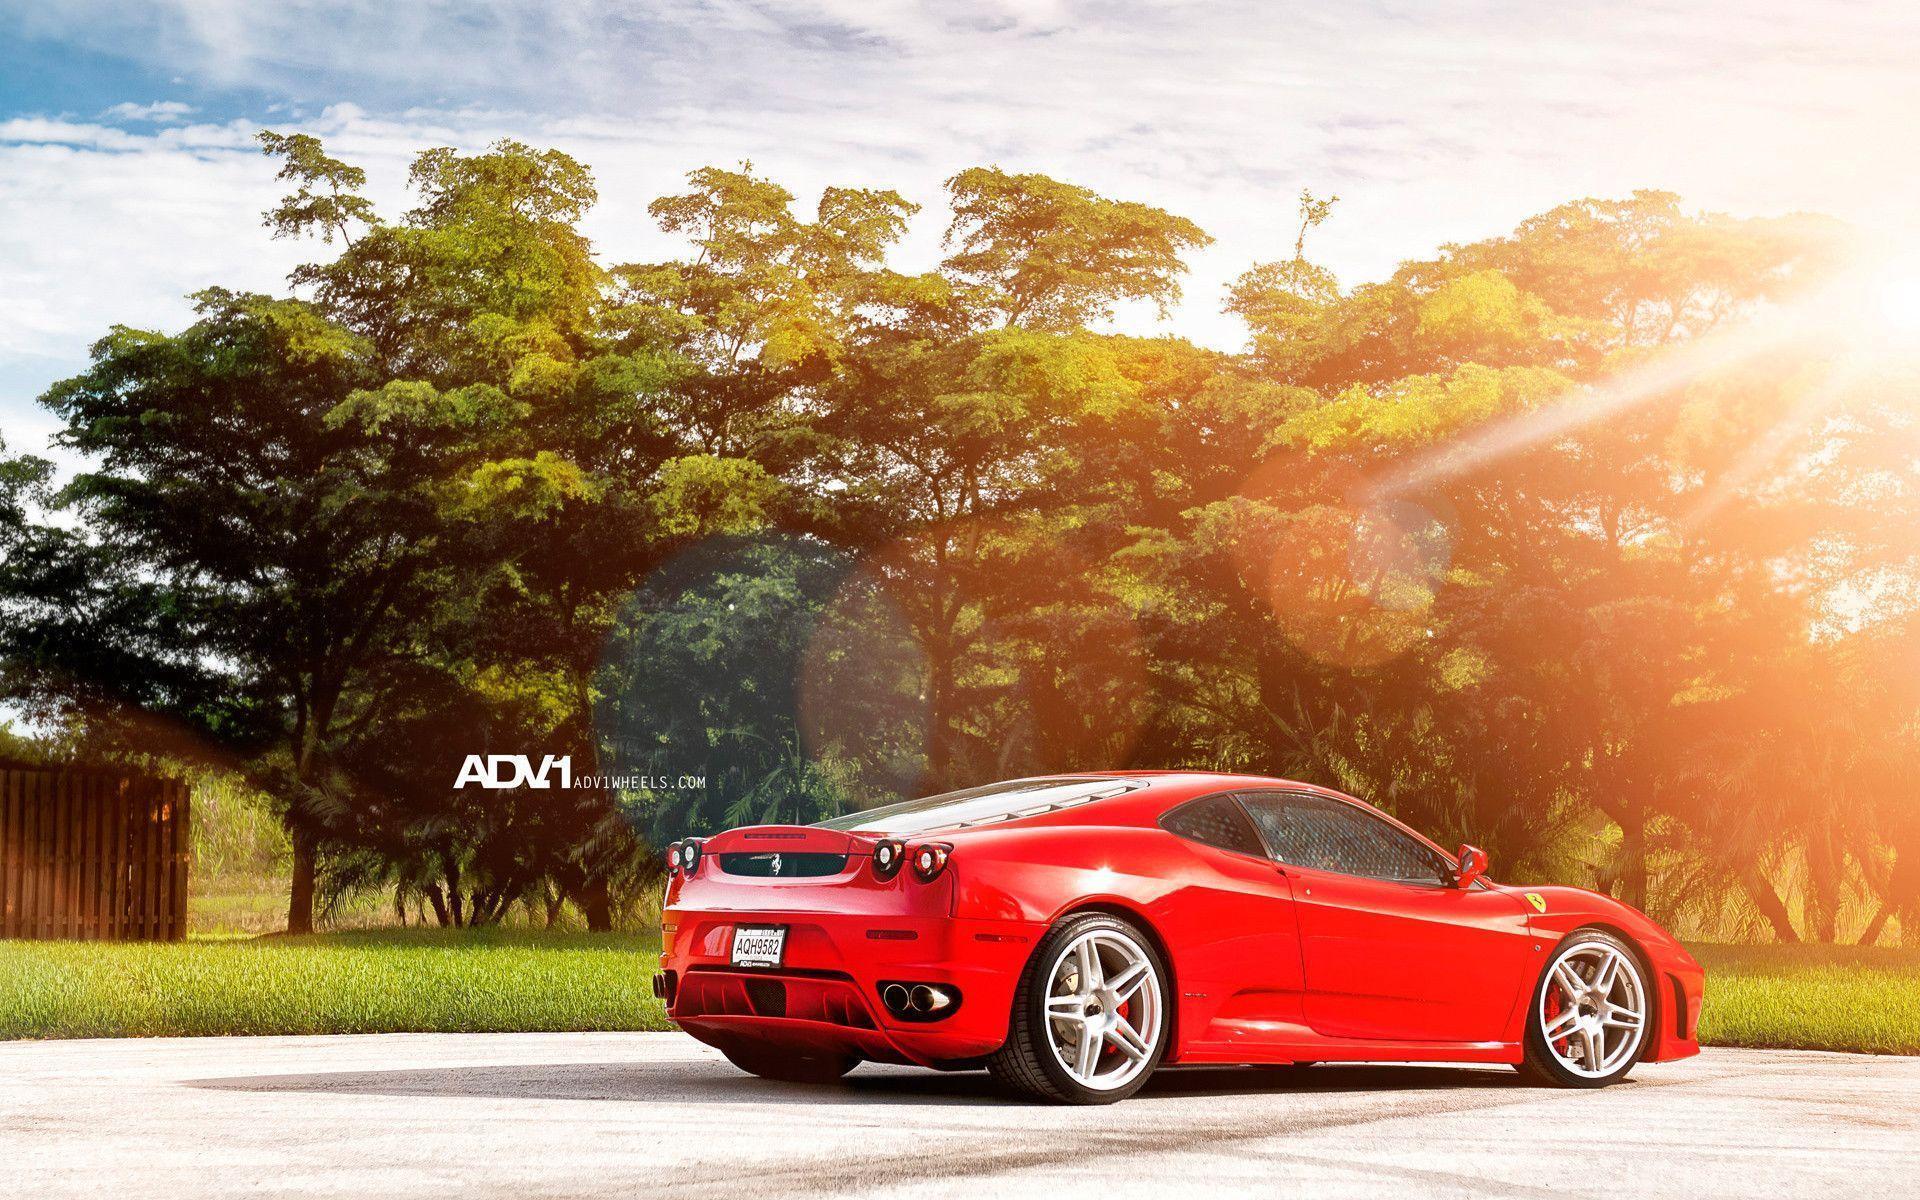 Ferrari F430 on ADV1 Wheels 3 Wallpaper. HD Car Wallpaper